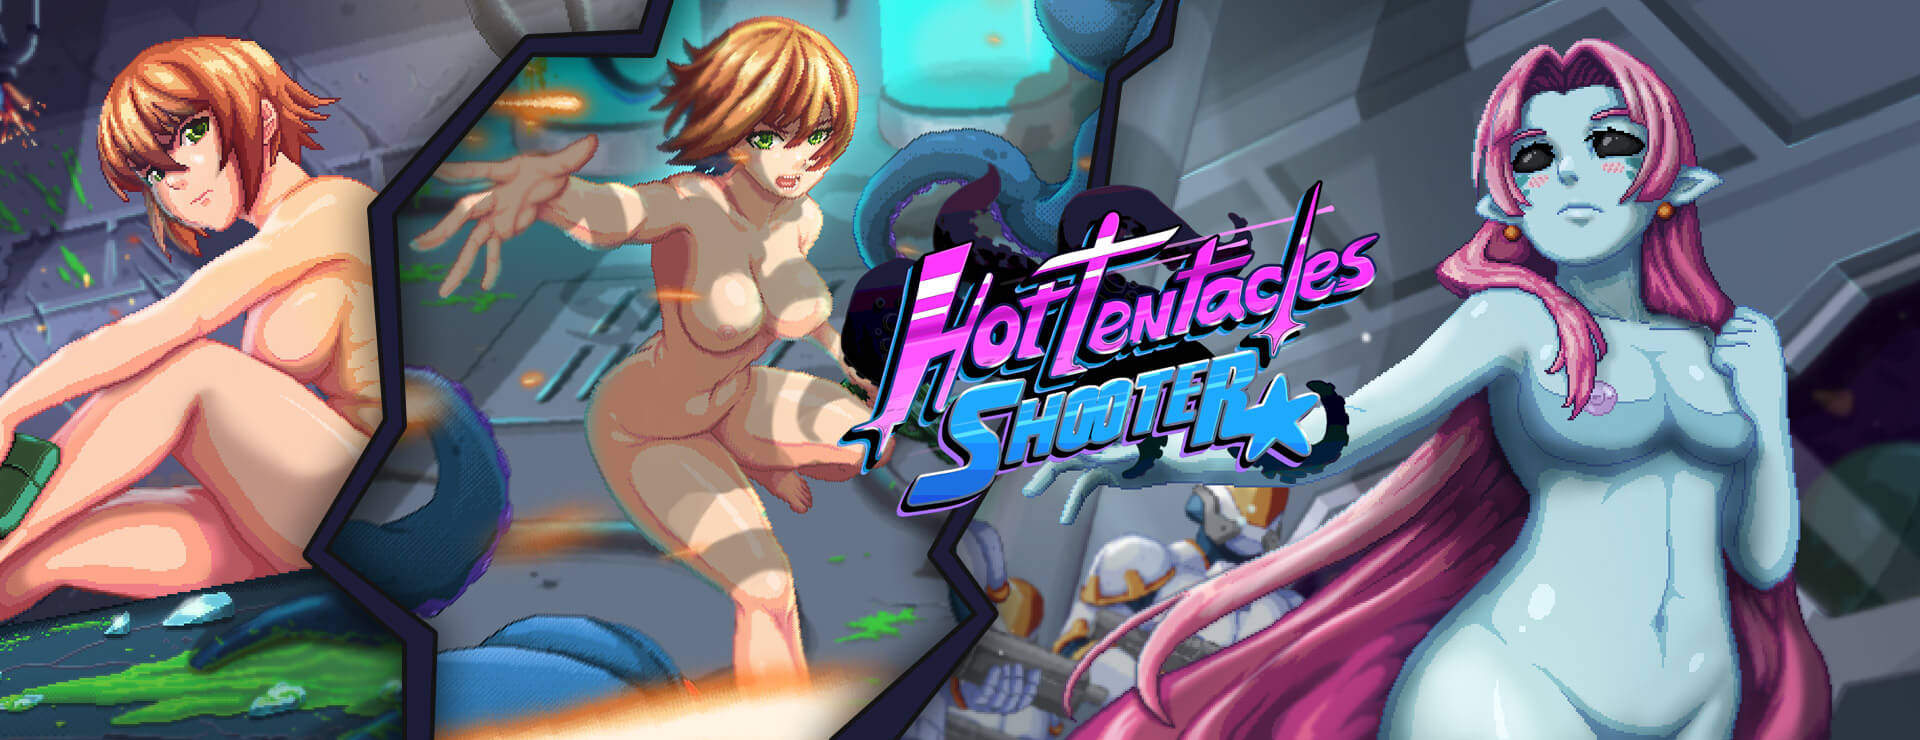 Hot Tentacles Shooter - アクションアドベンチャー ゲーム